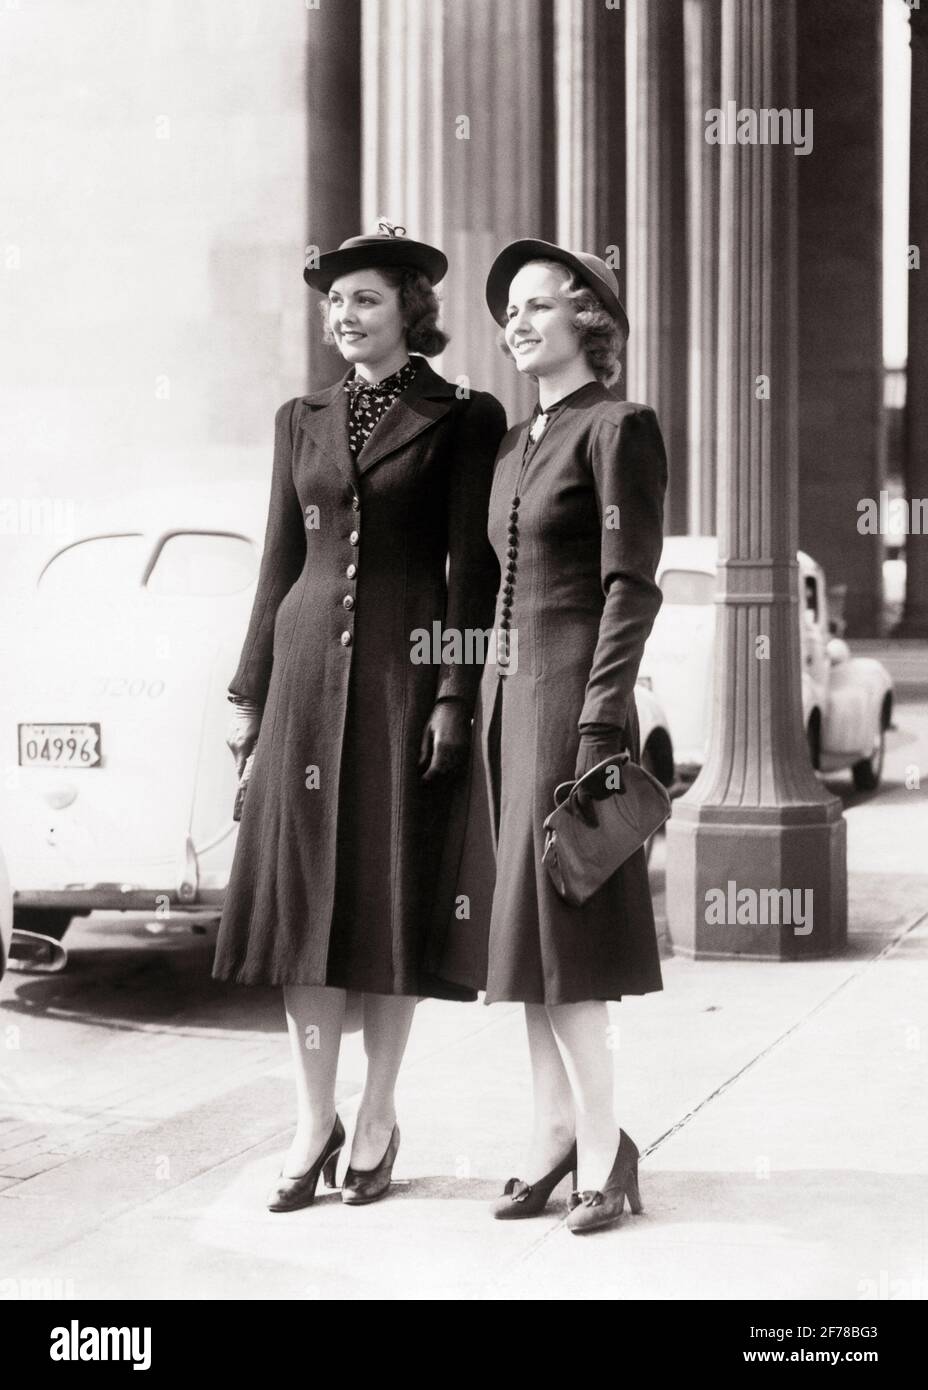 Chapeaux des années 1940 Banque de photographies et d'images à haute  résolution - Alamy